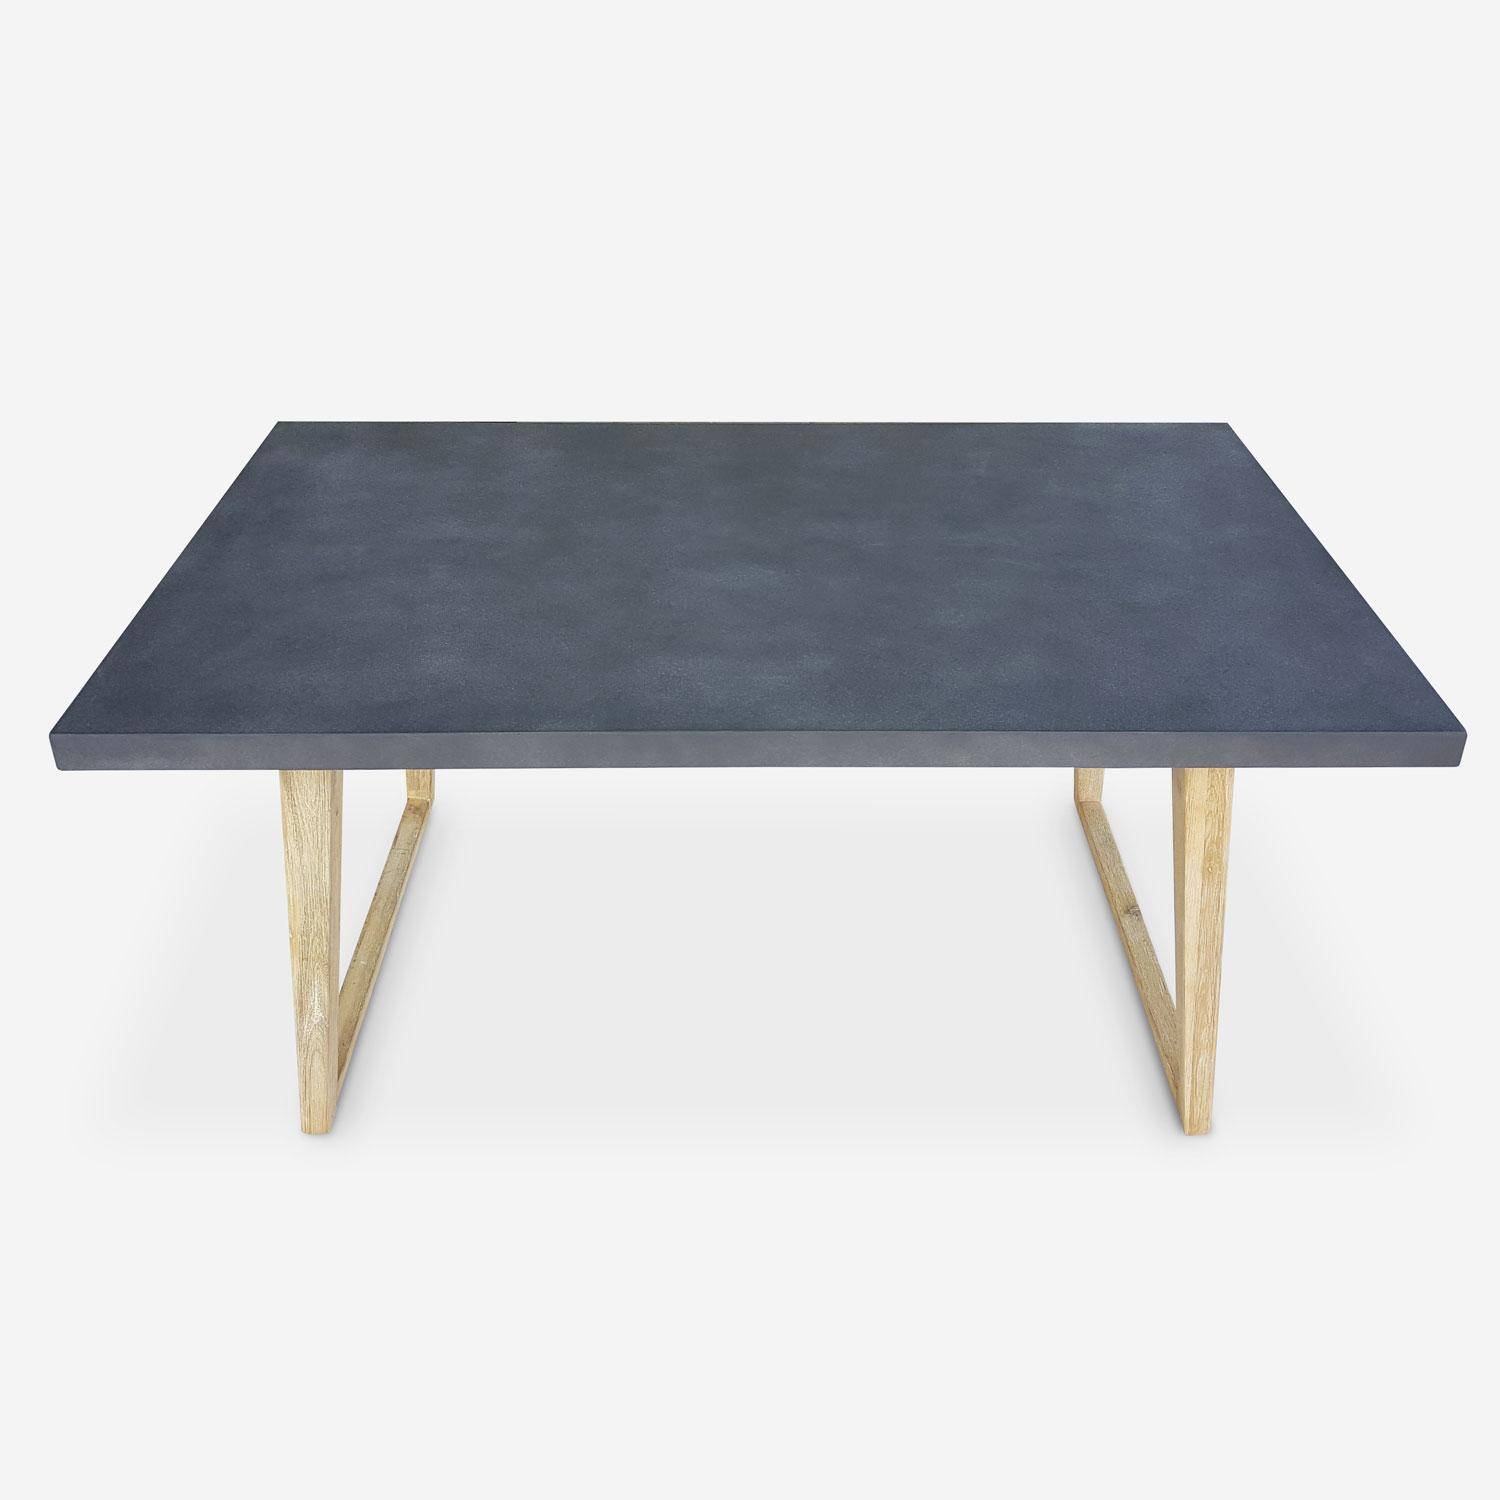 Gartentisch aus Faserzement 160 cm, U-förmiger Holzfuß - BORNEO - 4 Personen, Akazienbeine, graue Platte Photo2